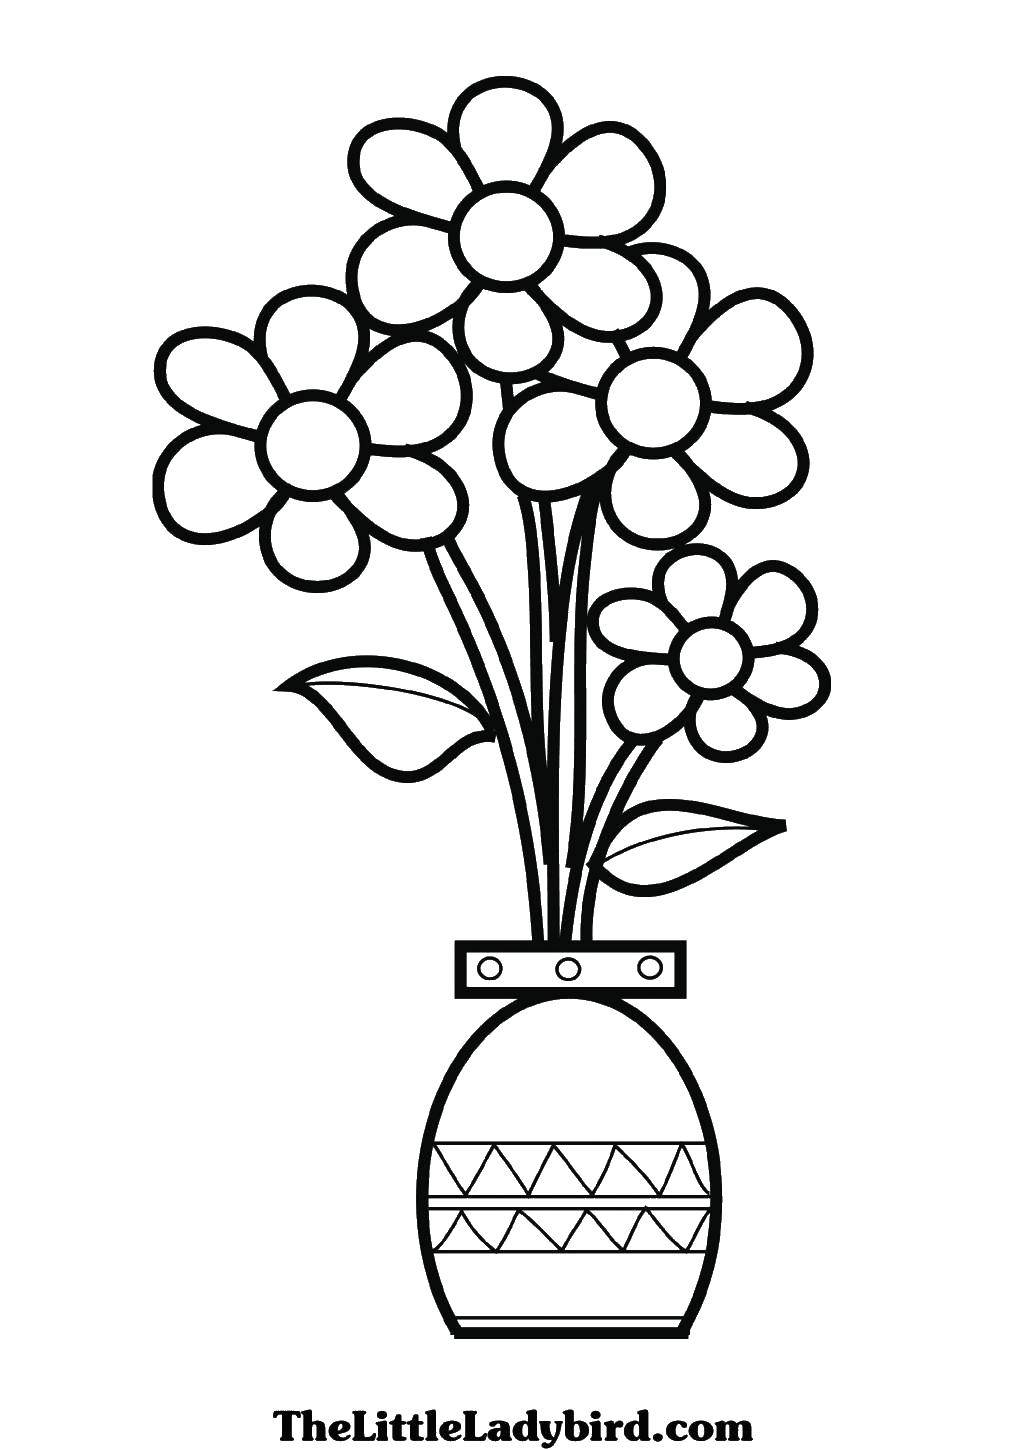 Название: Раскраска Ромашки в вазе. Категория: Ваза. Теги: ваза, ромашки.